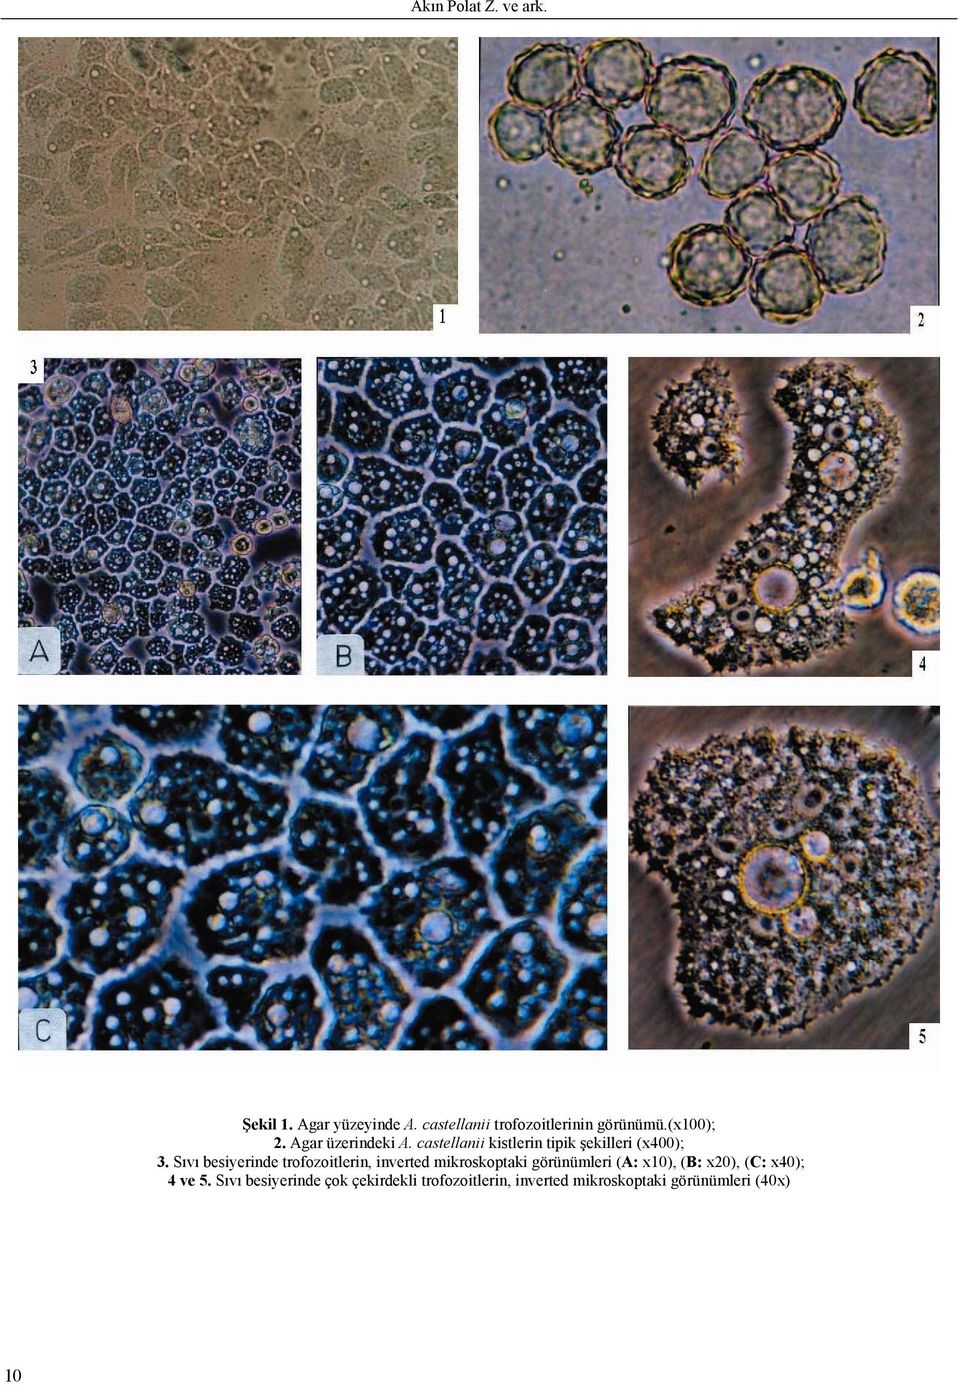 Sıvı besiyerinde trofozoitlerin, inverted mikroskoptaki görünümleri (A: x10), (B: x20),